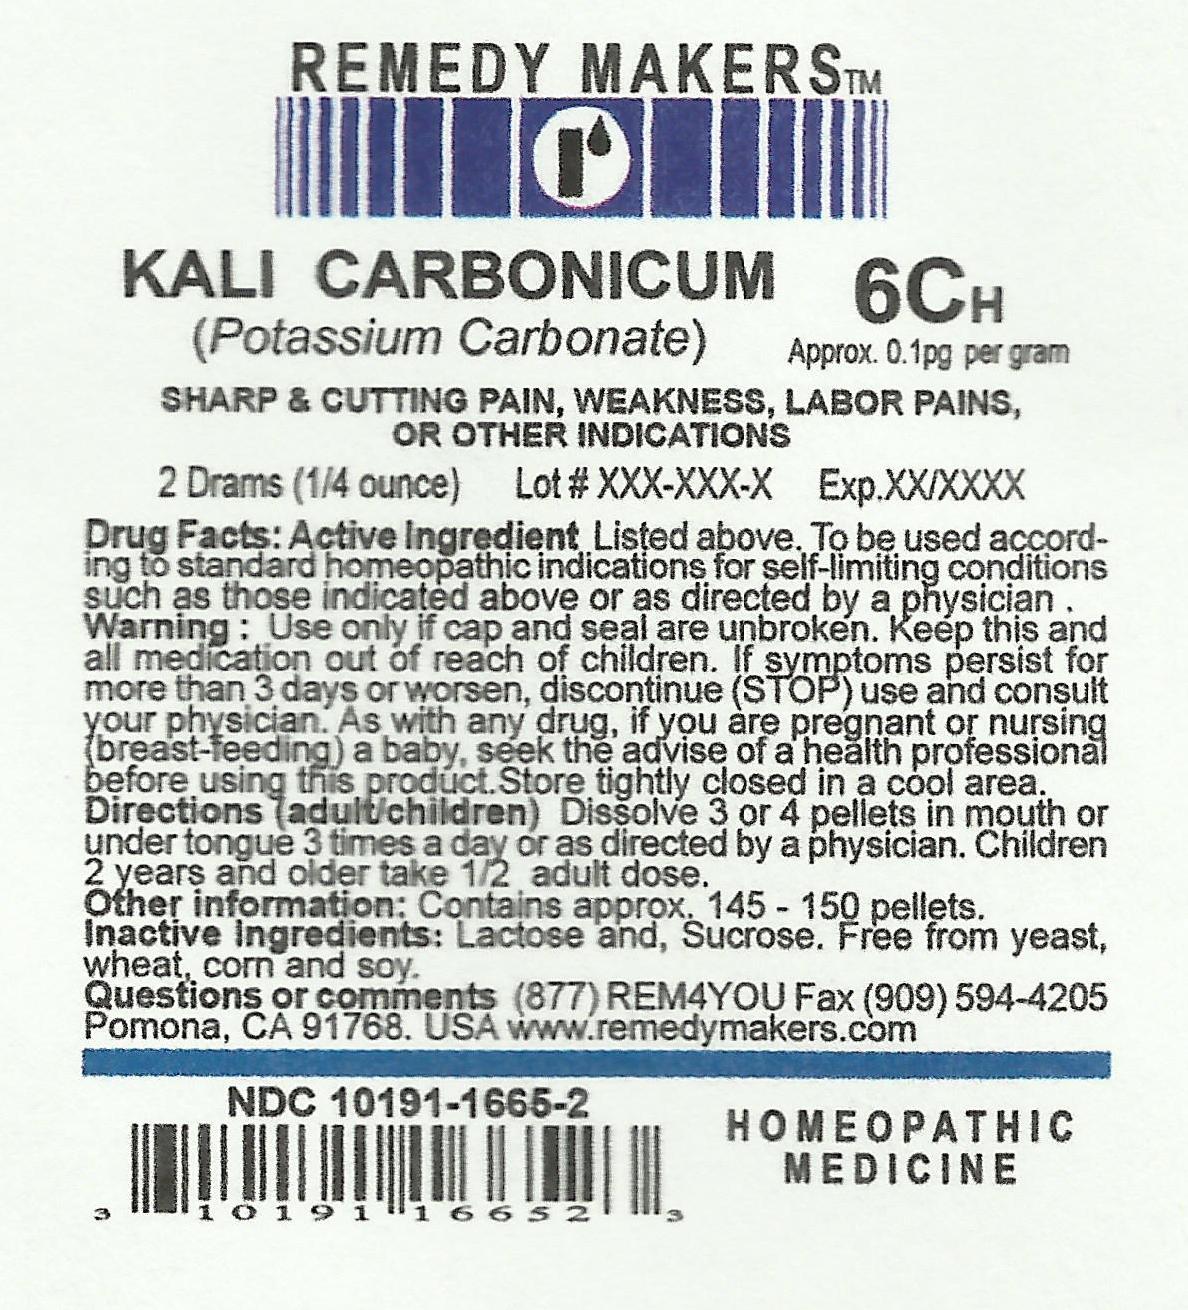 KALICARBONICUM6C